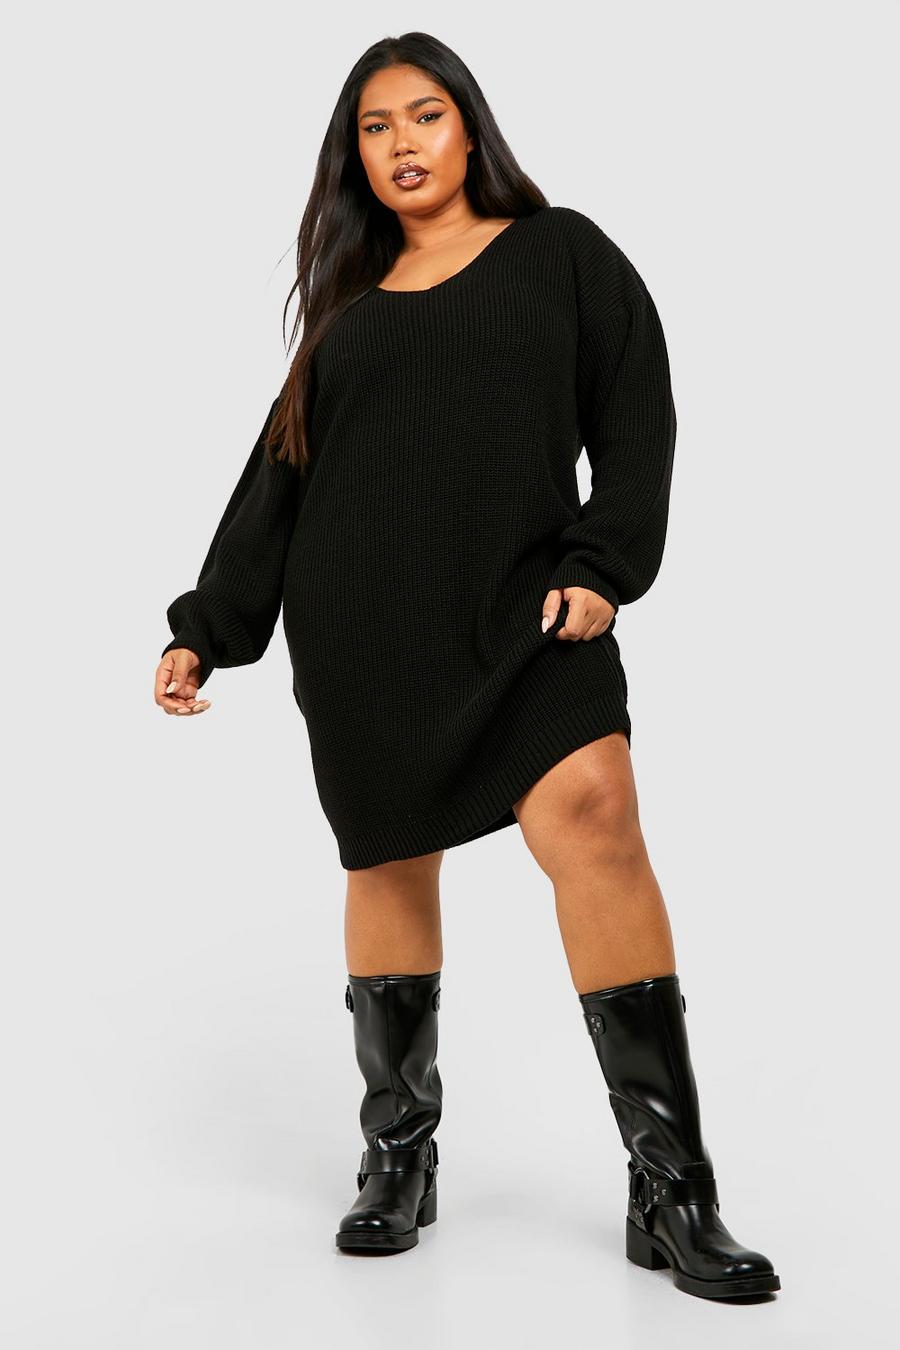 שחור nero שמלת מיני בסגנון סוודר עם צווארון וי מידות גדולות